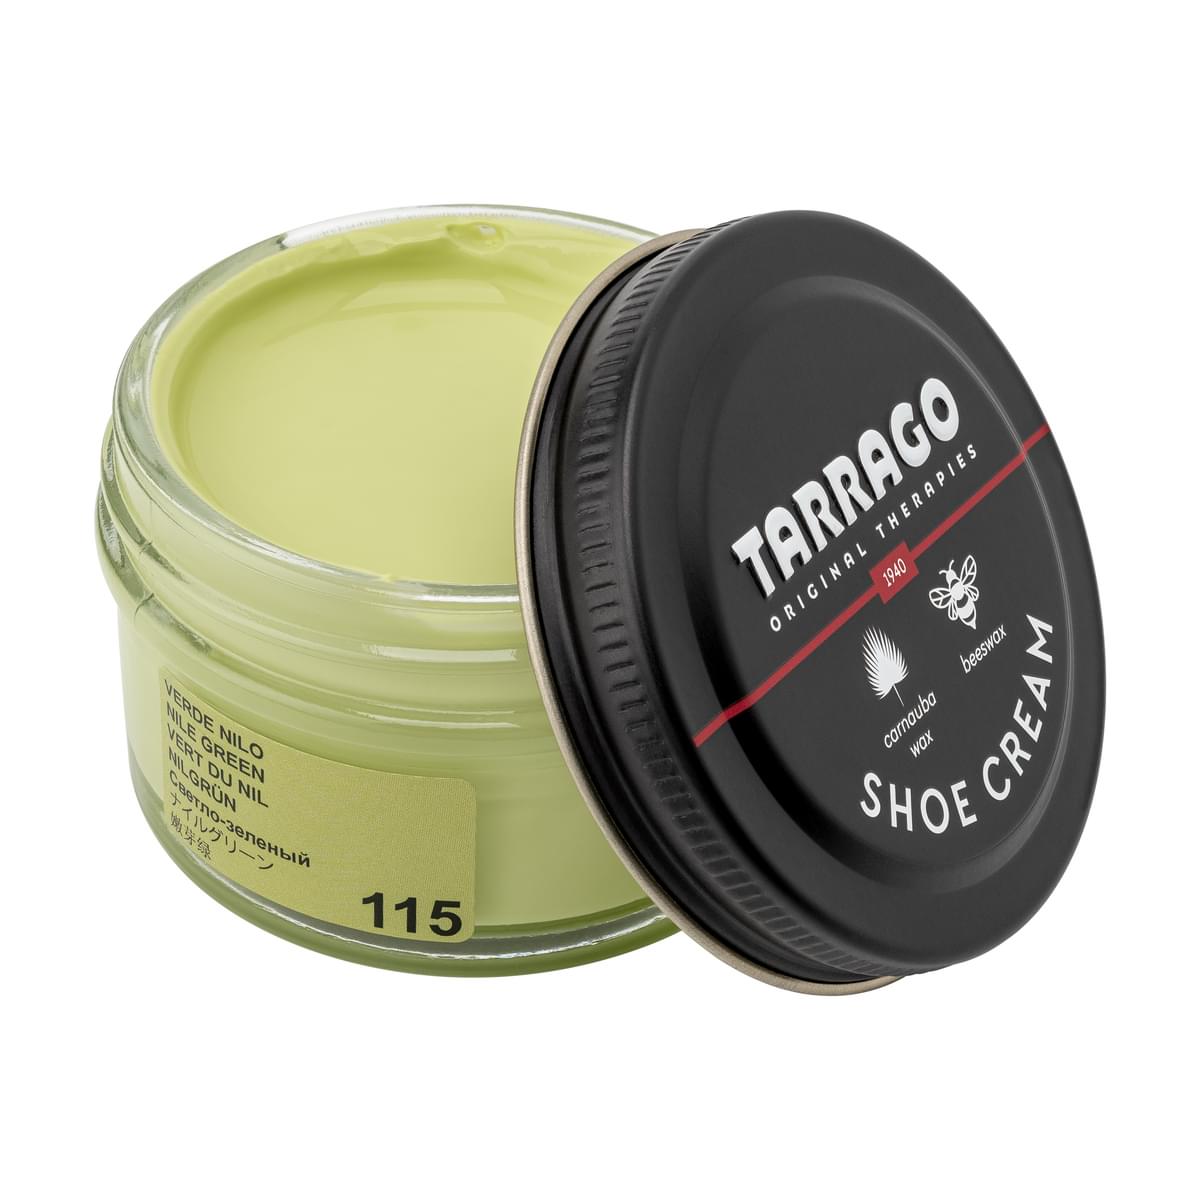 Tarrago Shoe Cream  - Nile Green - 115